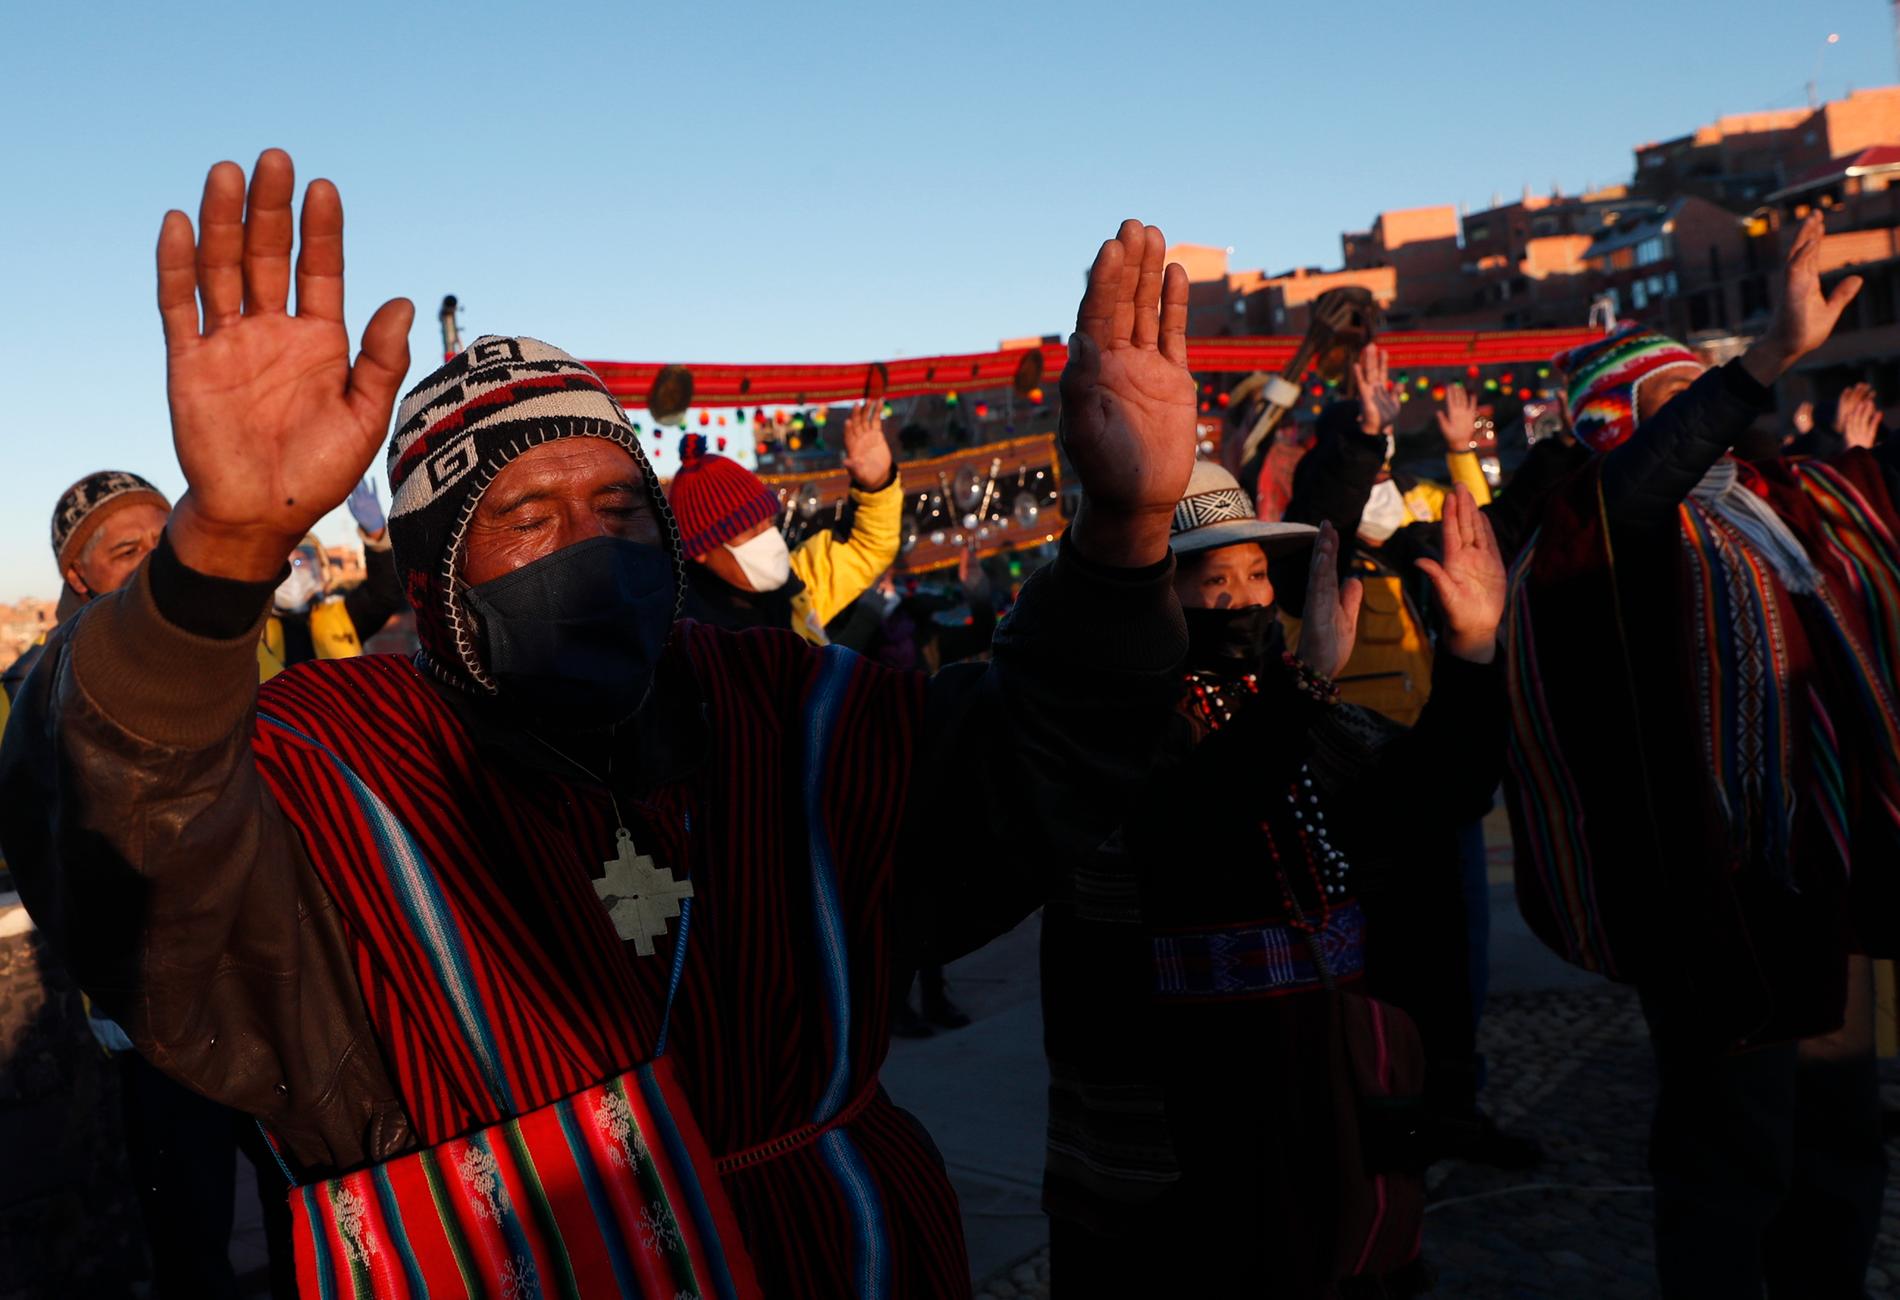 Människor tillhörande ursprungsfolket aymara bär skyddsmasker under en ceremoni för att fira solen i La Paz, Bolivia.